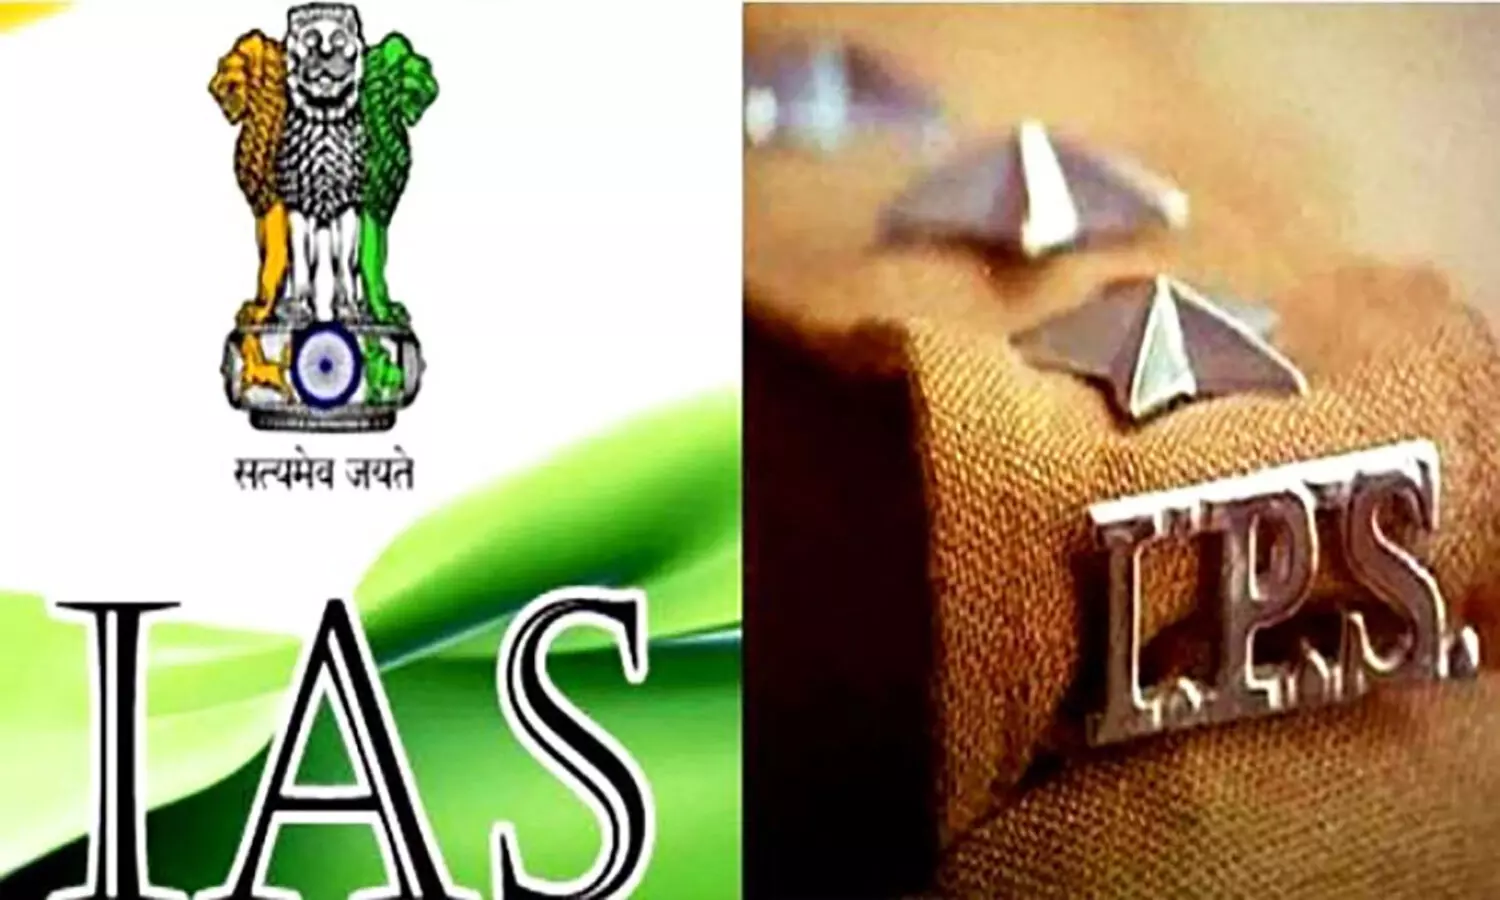 IAS-IPS Officers Circular: आईएएस, आईपीएस अफसरों के लिए सर्कुलर, 6 महीने की सैलरी से अधिक राशि शेयर में लगाया तो सरकार को बताना होगा